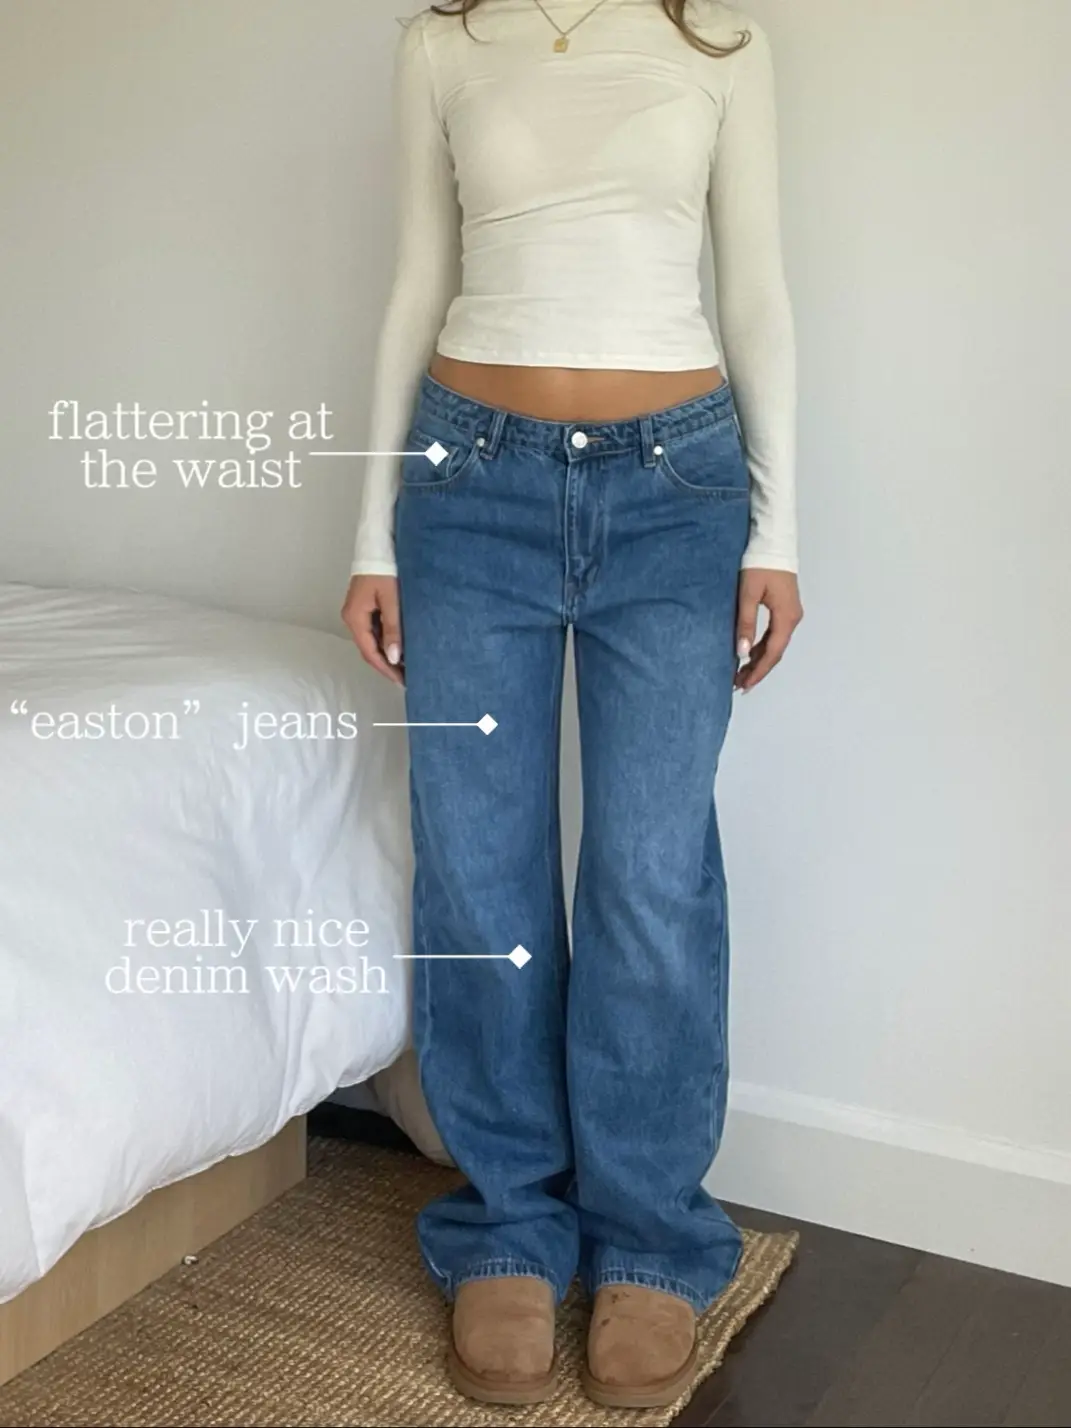 low rise jeans fashion - Lemon8 Search